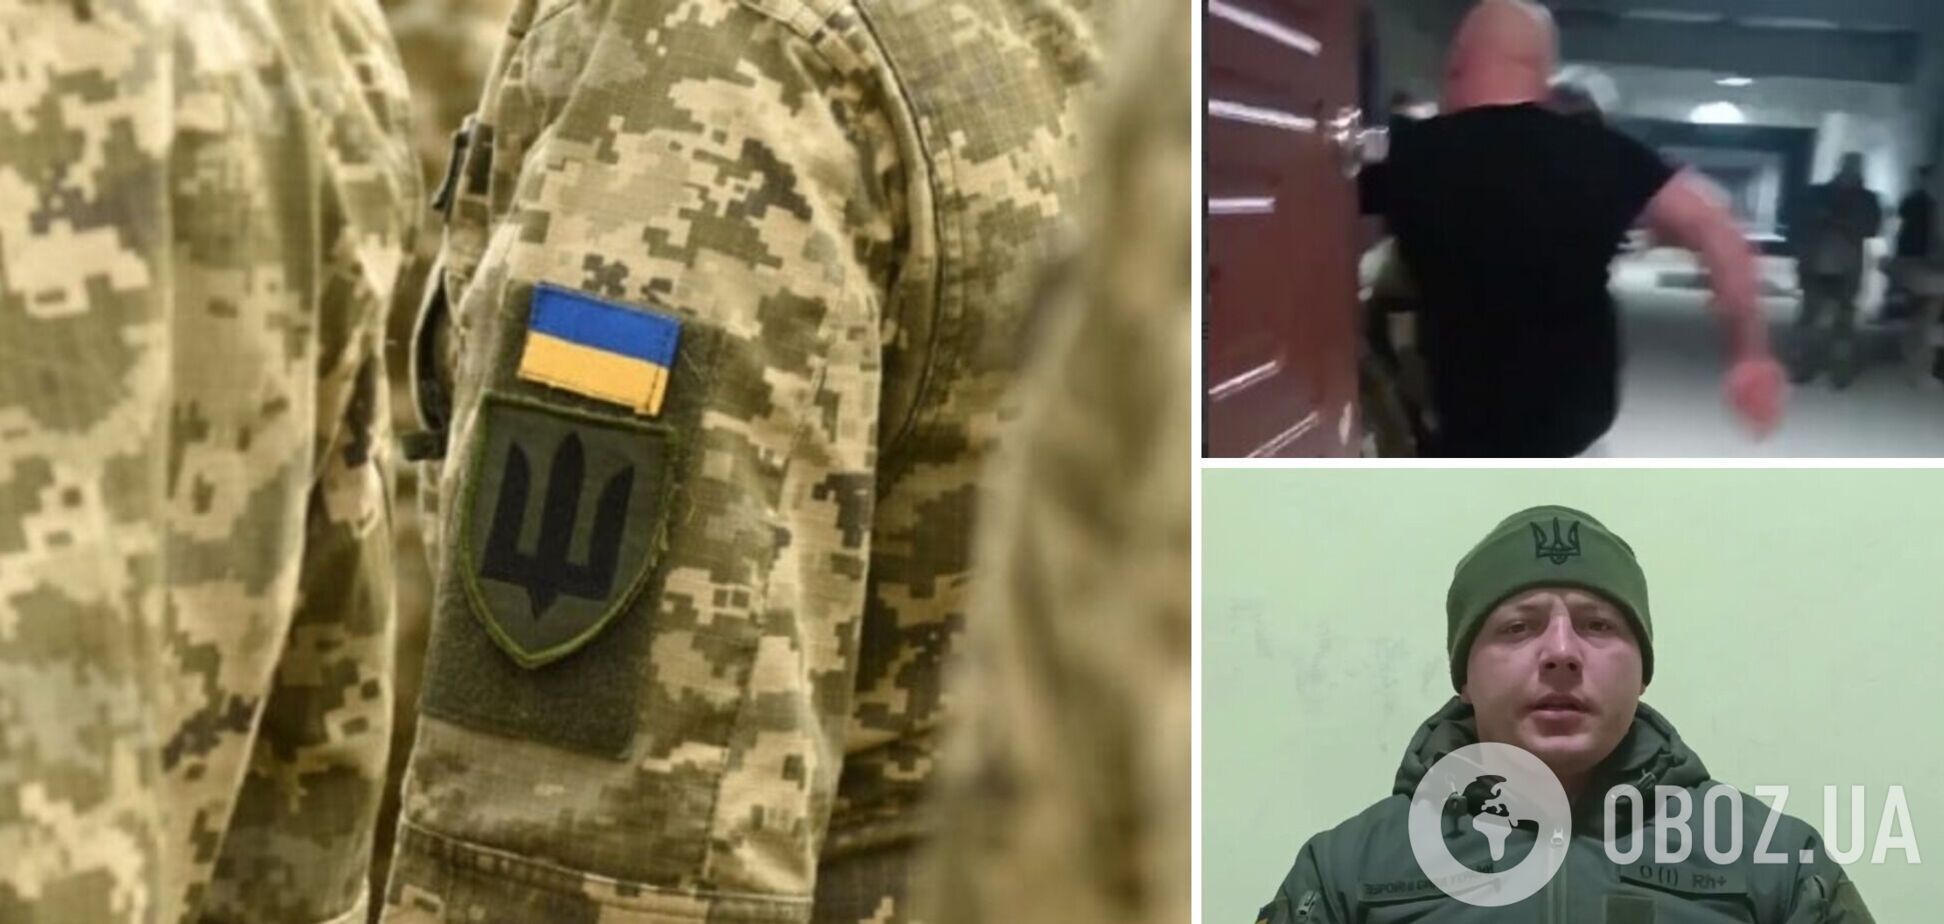 Скандал вокруг избиения срочника в воинской части Житомира получил продолжение: за дело взялось ГБР